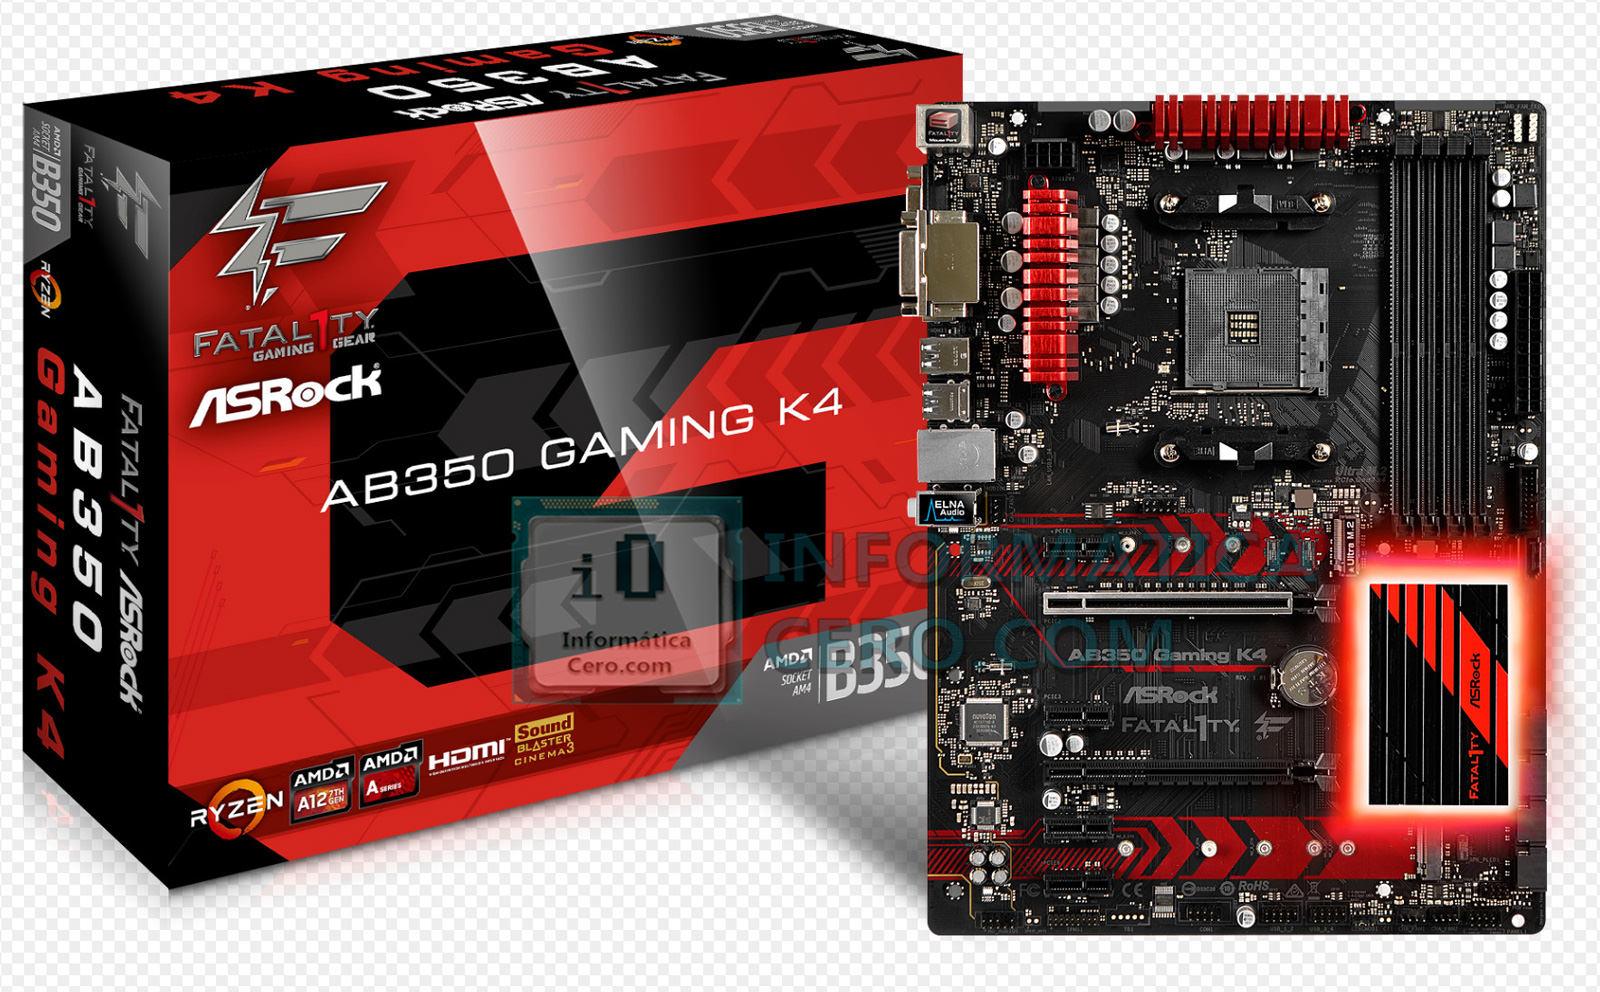 ASRock AB350 Gaming K4